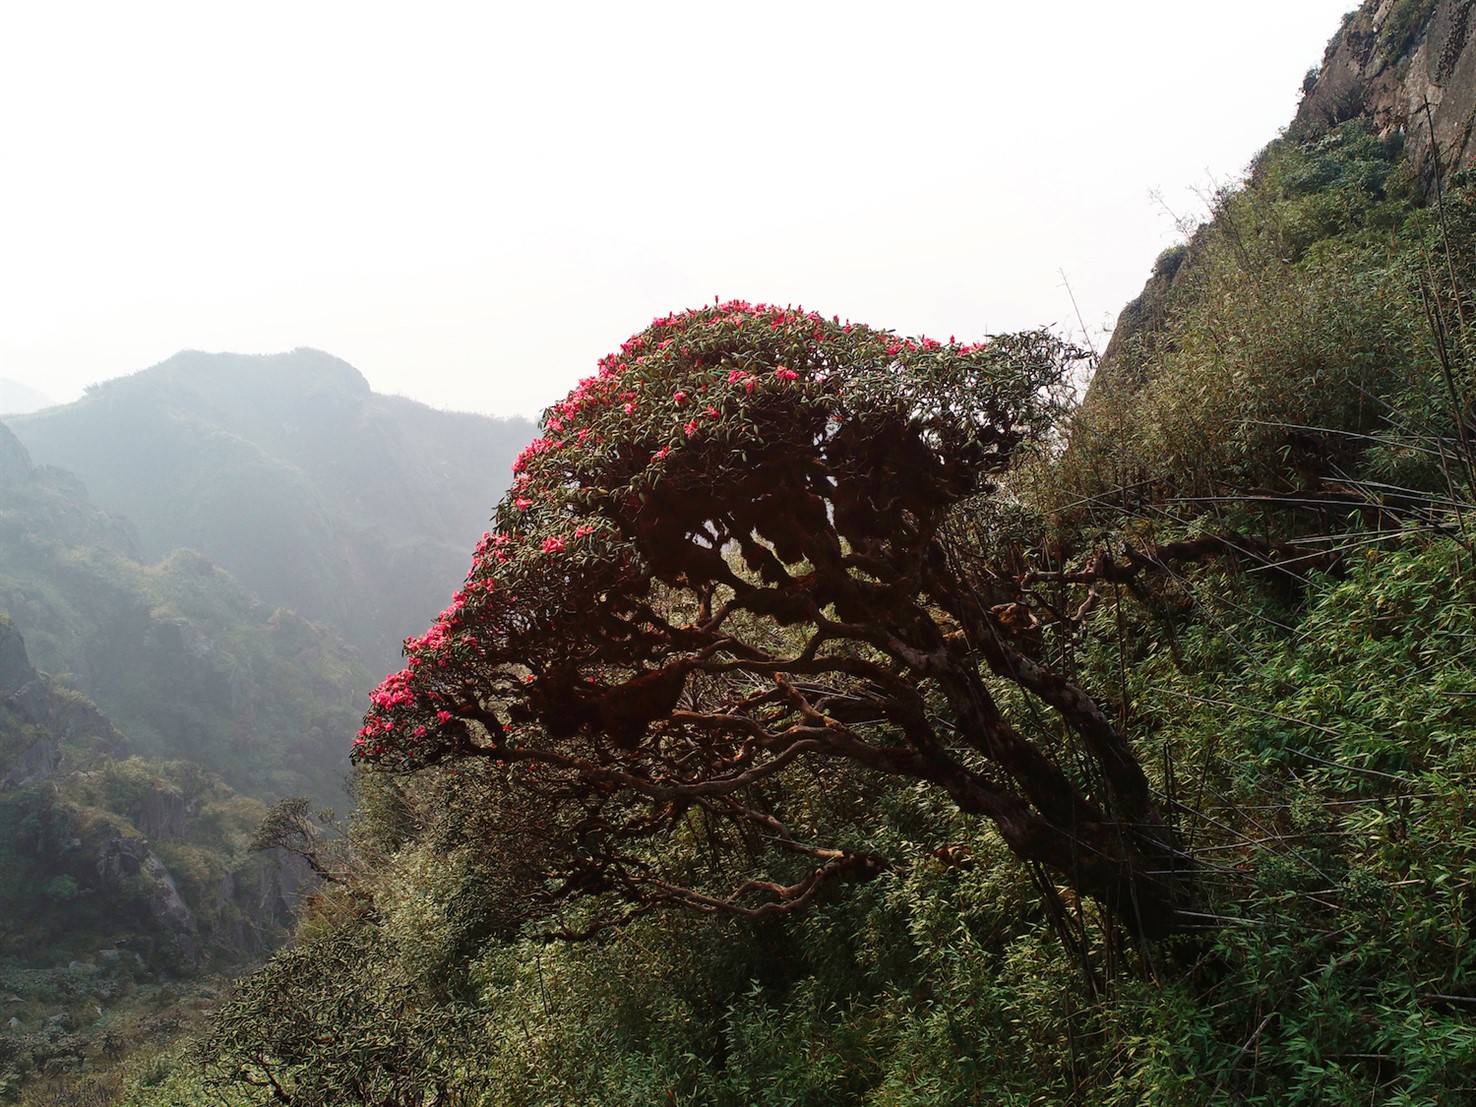 Hoa đỗ quyên chính là biểu tượng của sức sống mãnh liệt khi những bông hoa đủ sắc màu vô cùng rực rỡ lại bung nở từ những thân cành khô mốc của loài cây rừng mọc cheo leo nơi vách đá.